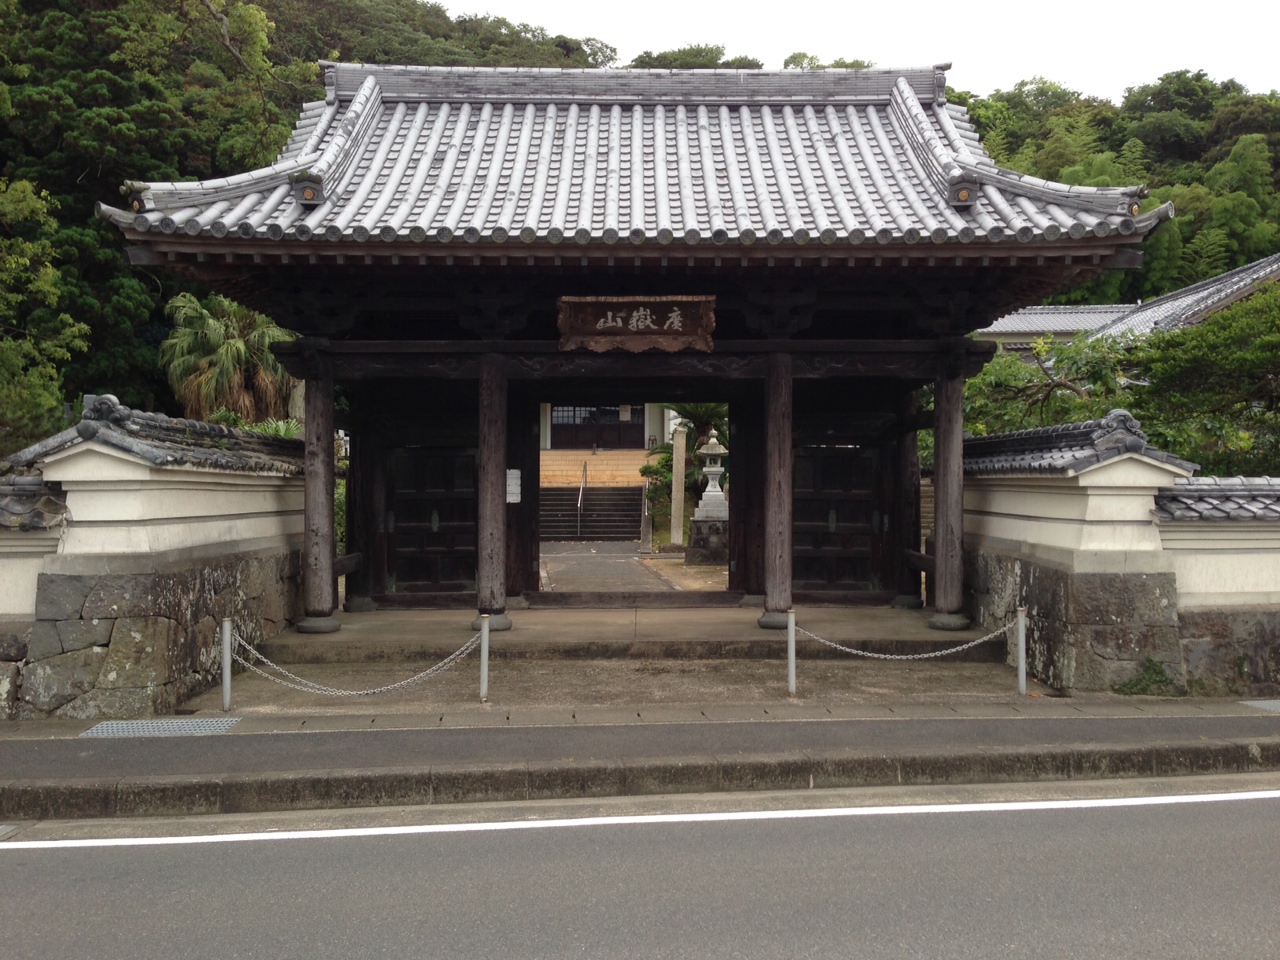 五島市大円寺正門（撮影者：Nami-ja　Wikipediaより20210905ダウンロード）の画像。